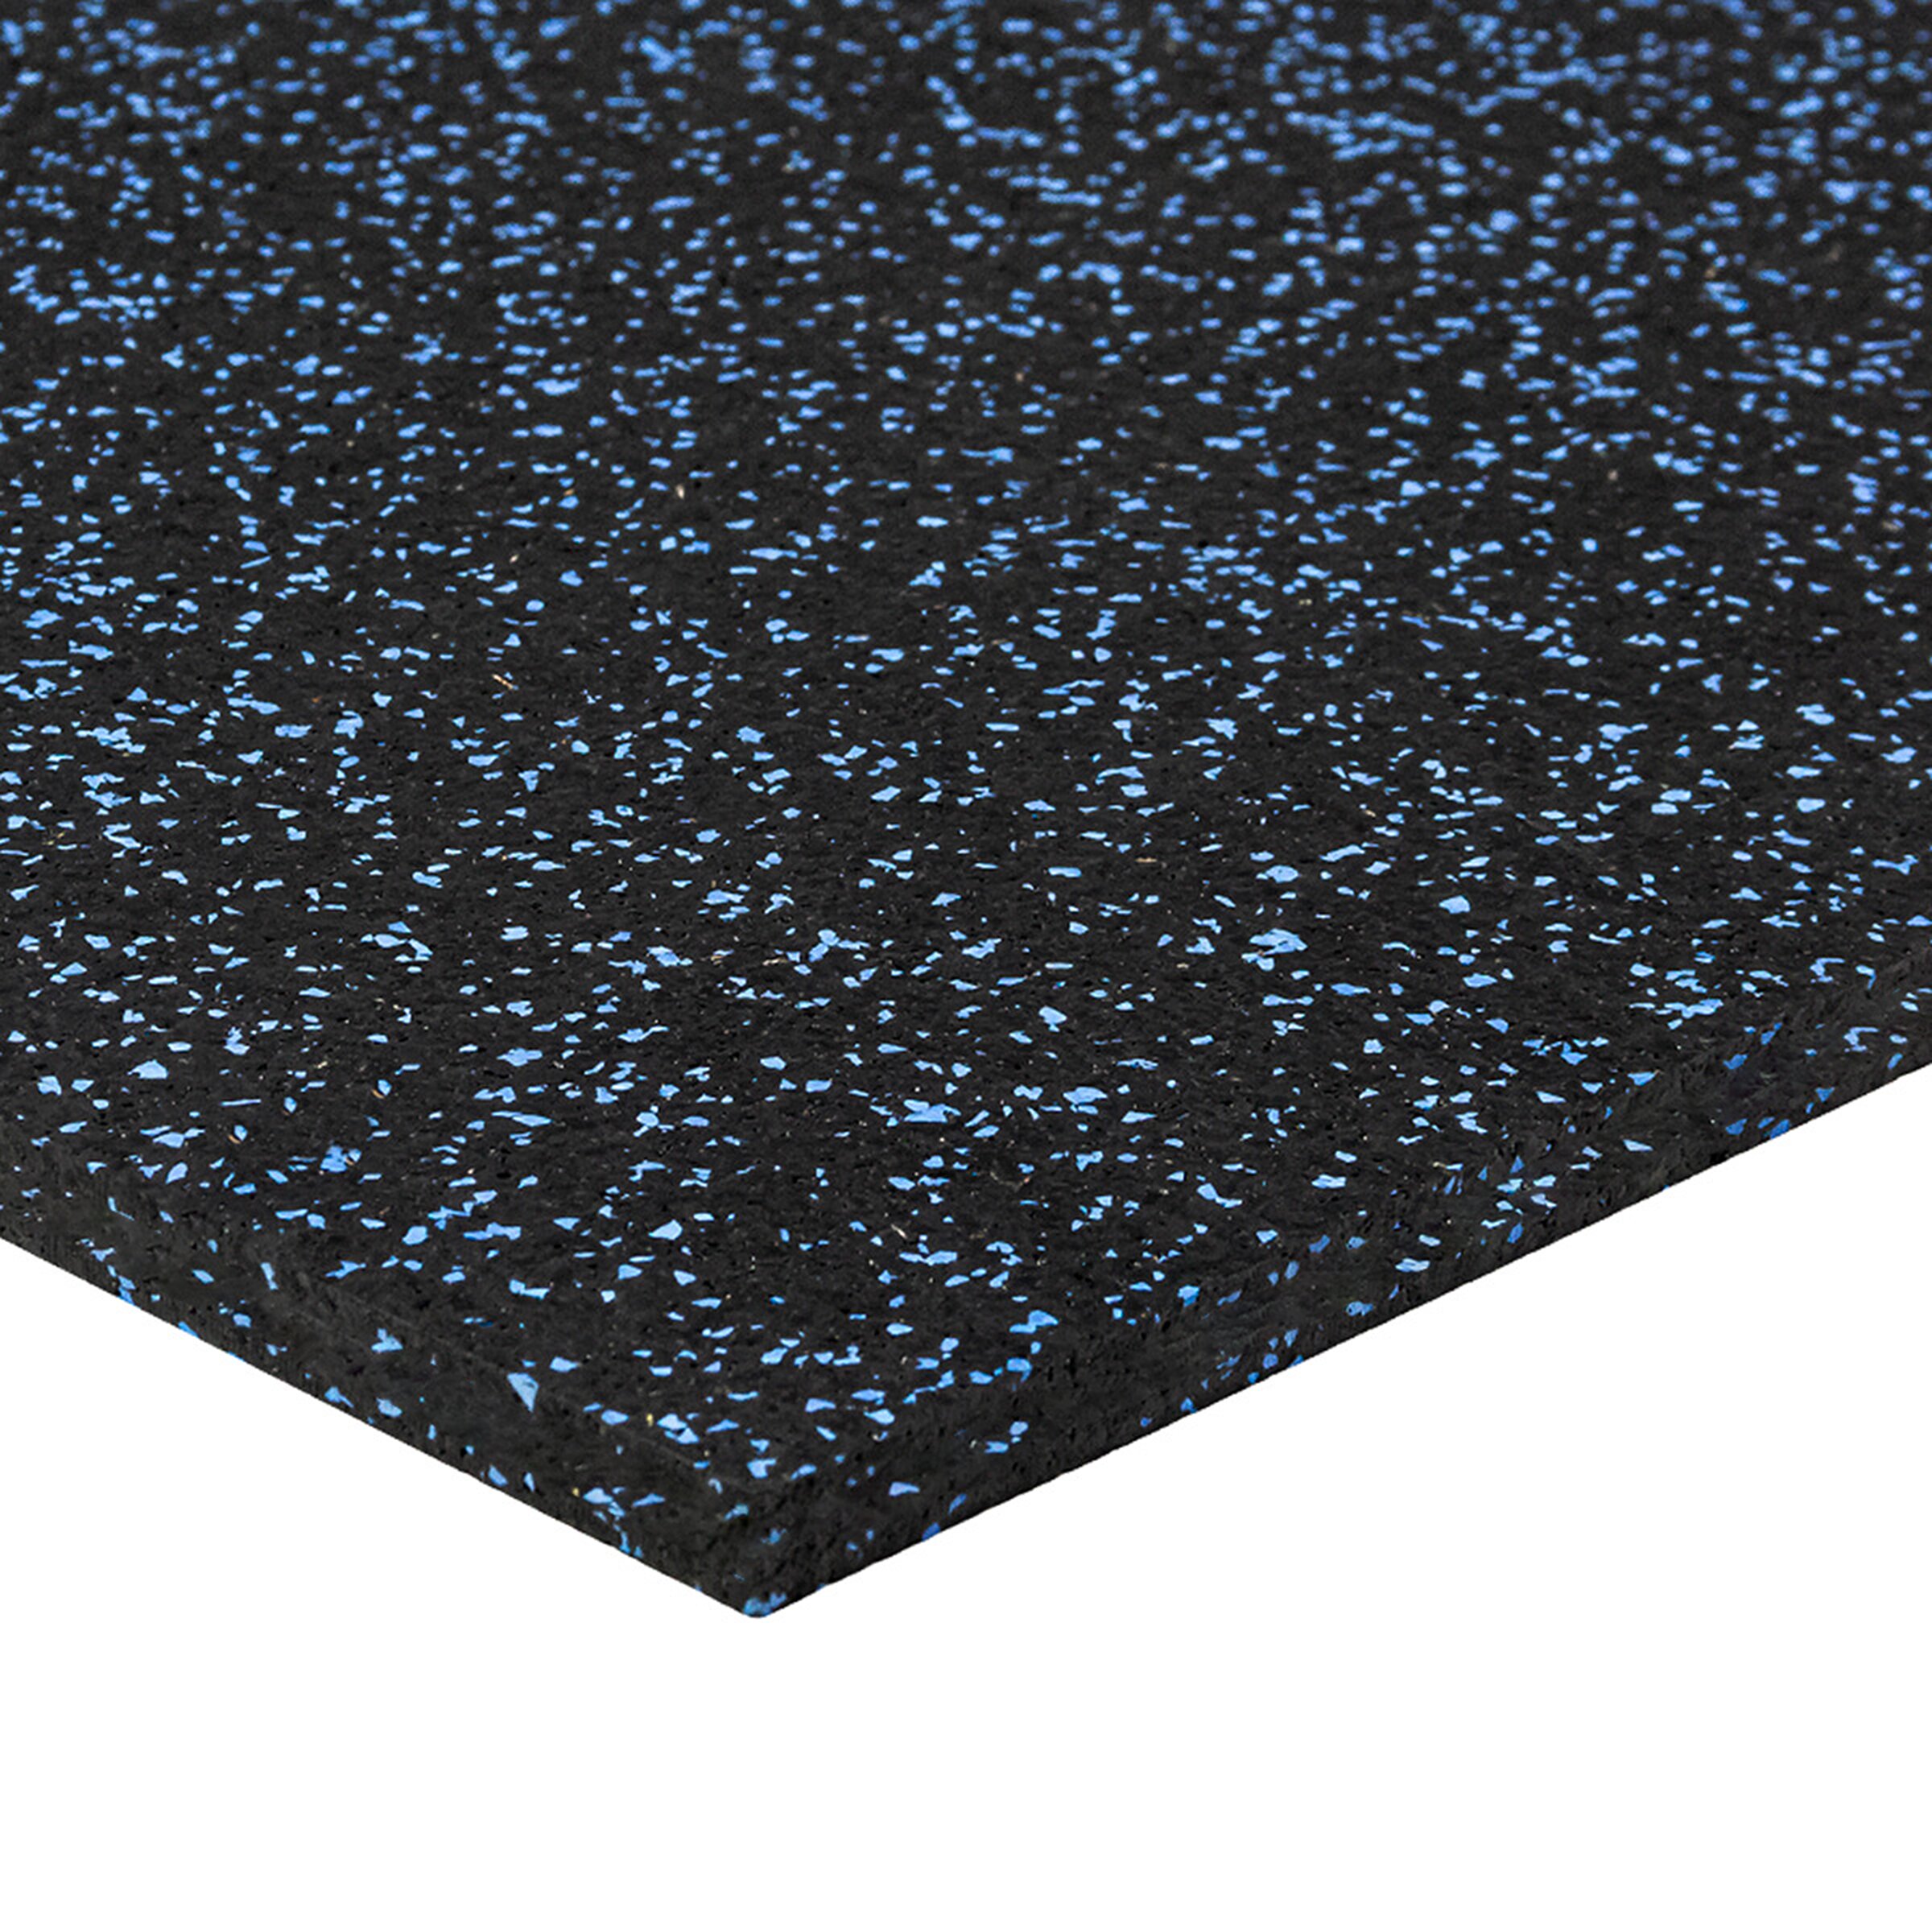 Černo-modrá gumová puzzle modulová dlažba FLOMA SF1050 FitFlo - délka 50 cm, šířka 50 cm, výška 1,6 cm